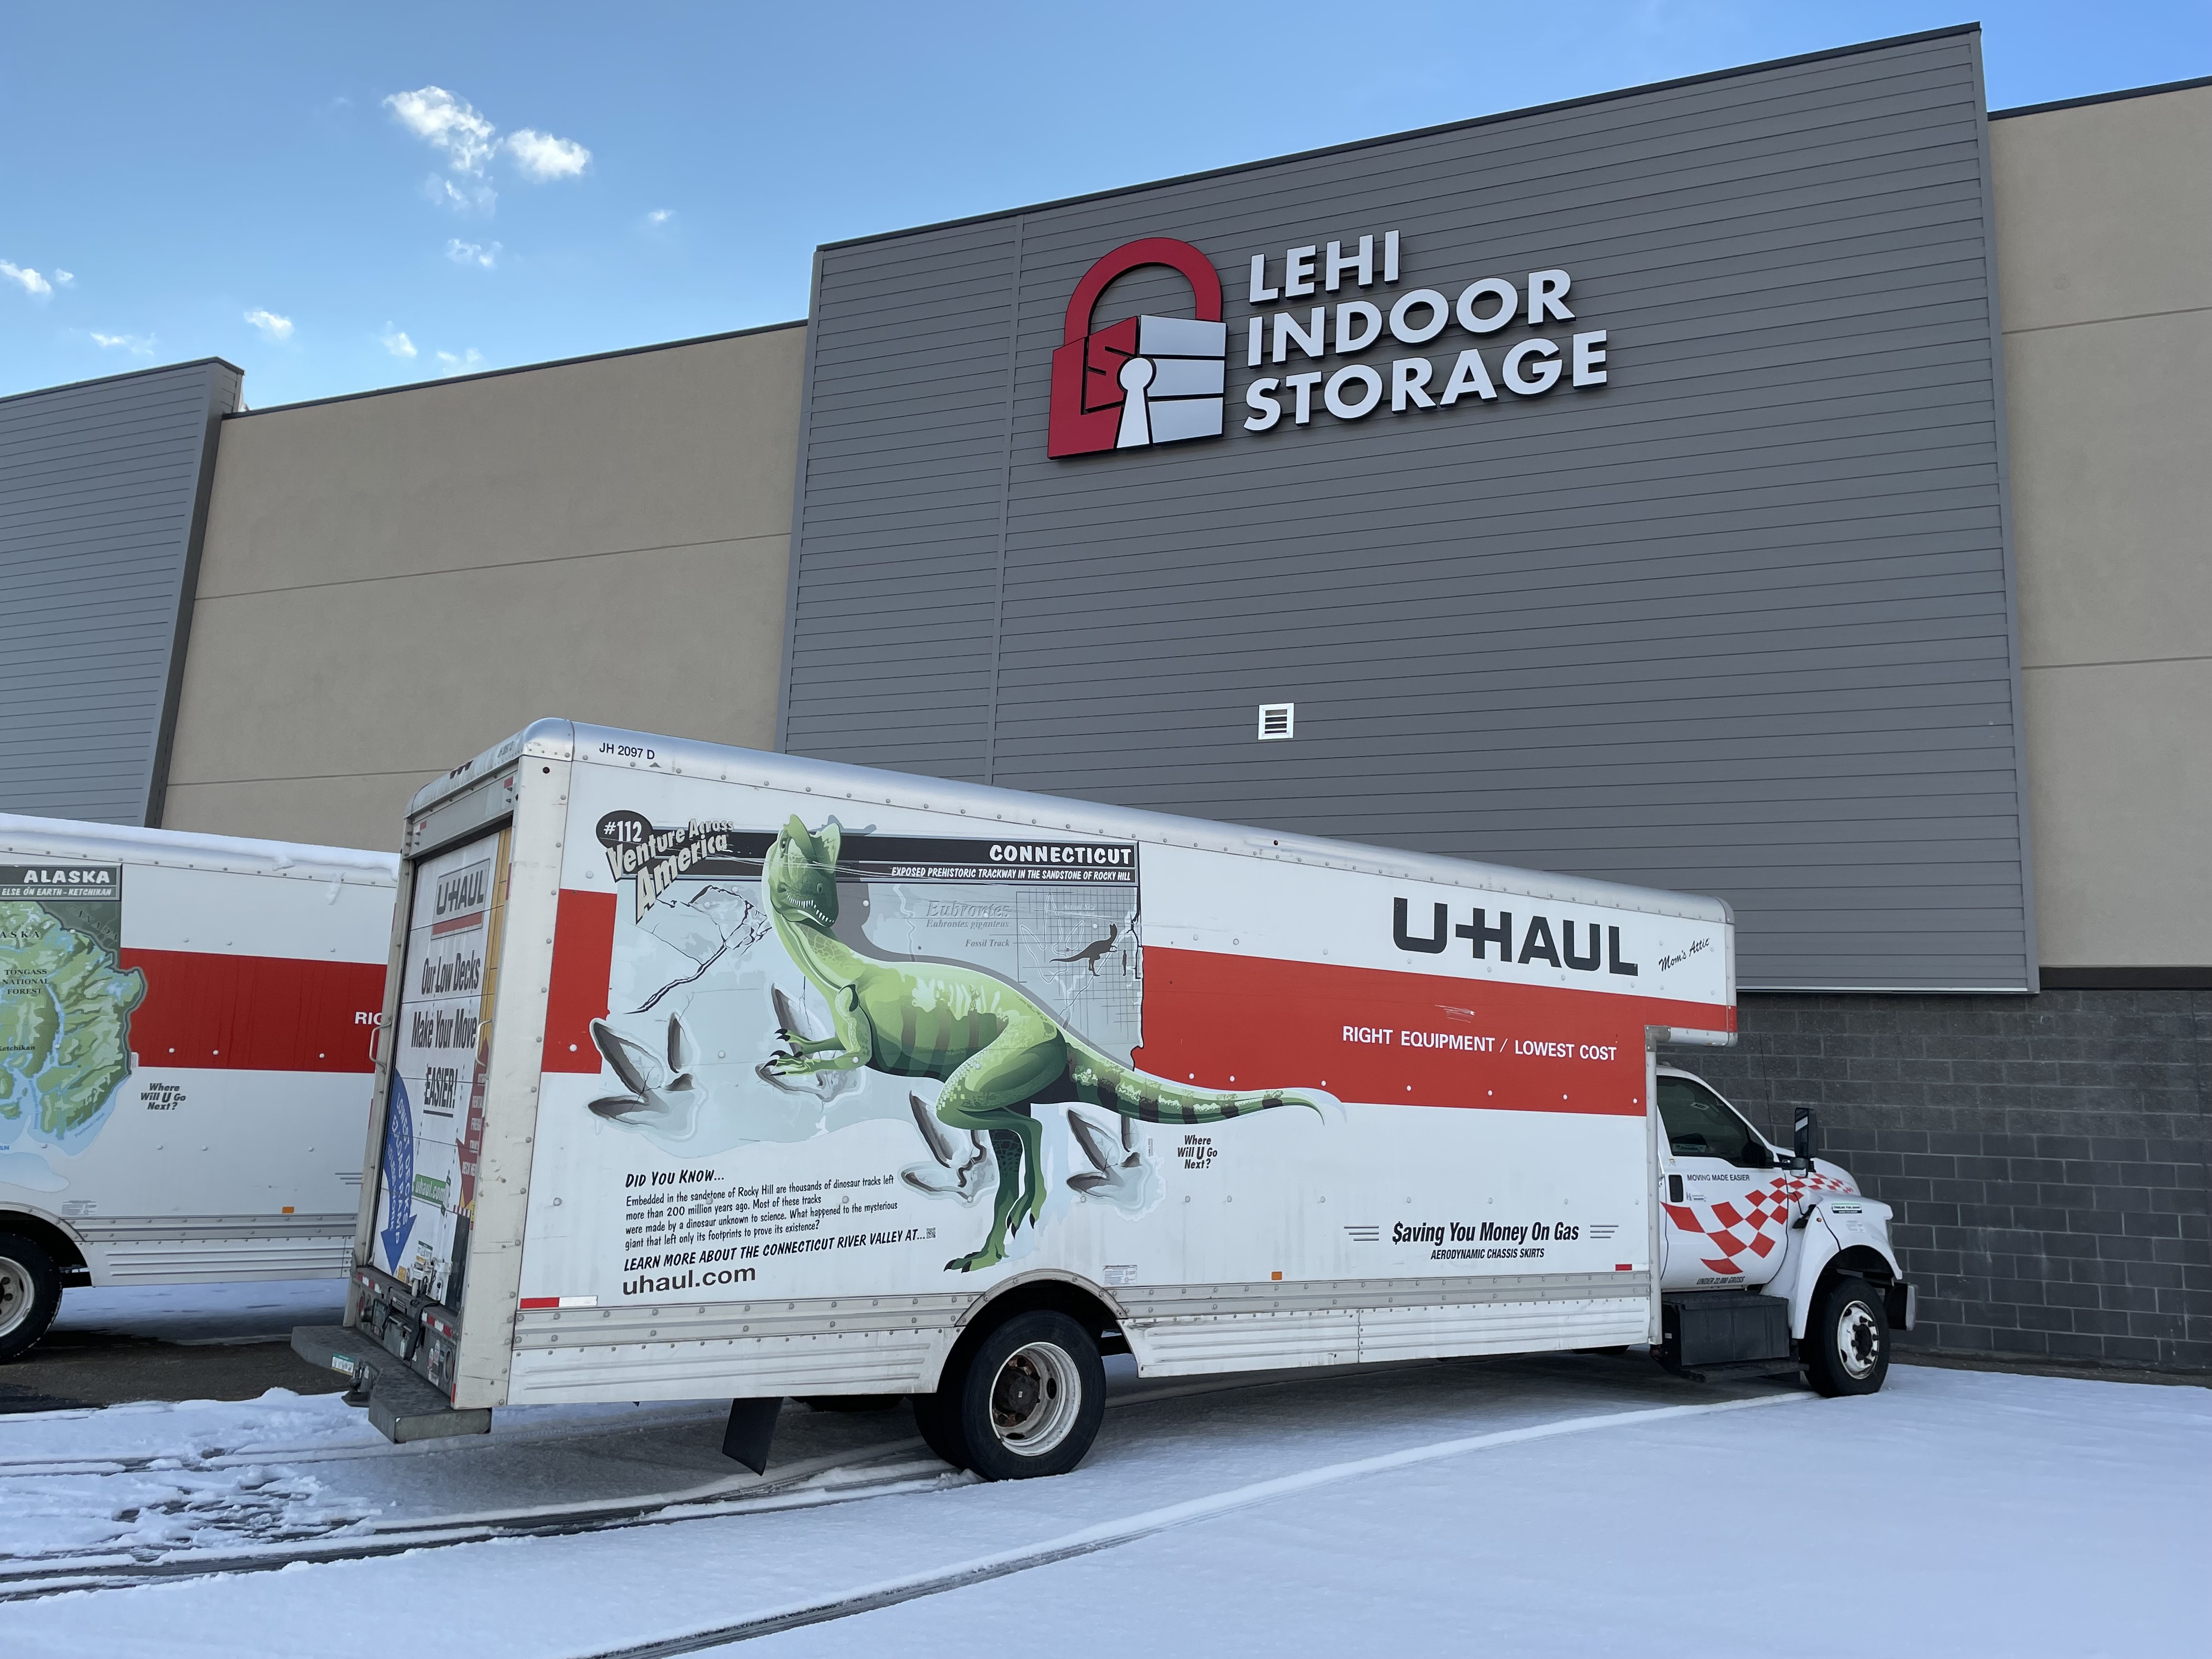 Uhaul Truck Rentals At Lehi Indoor Storage, Lehi, UT 84043